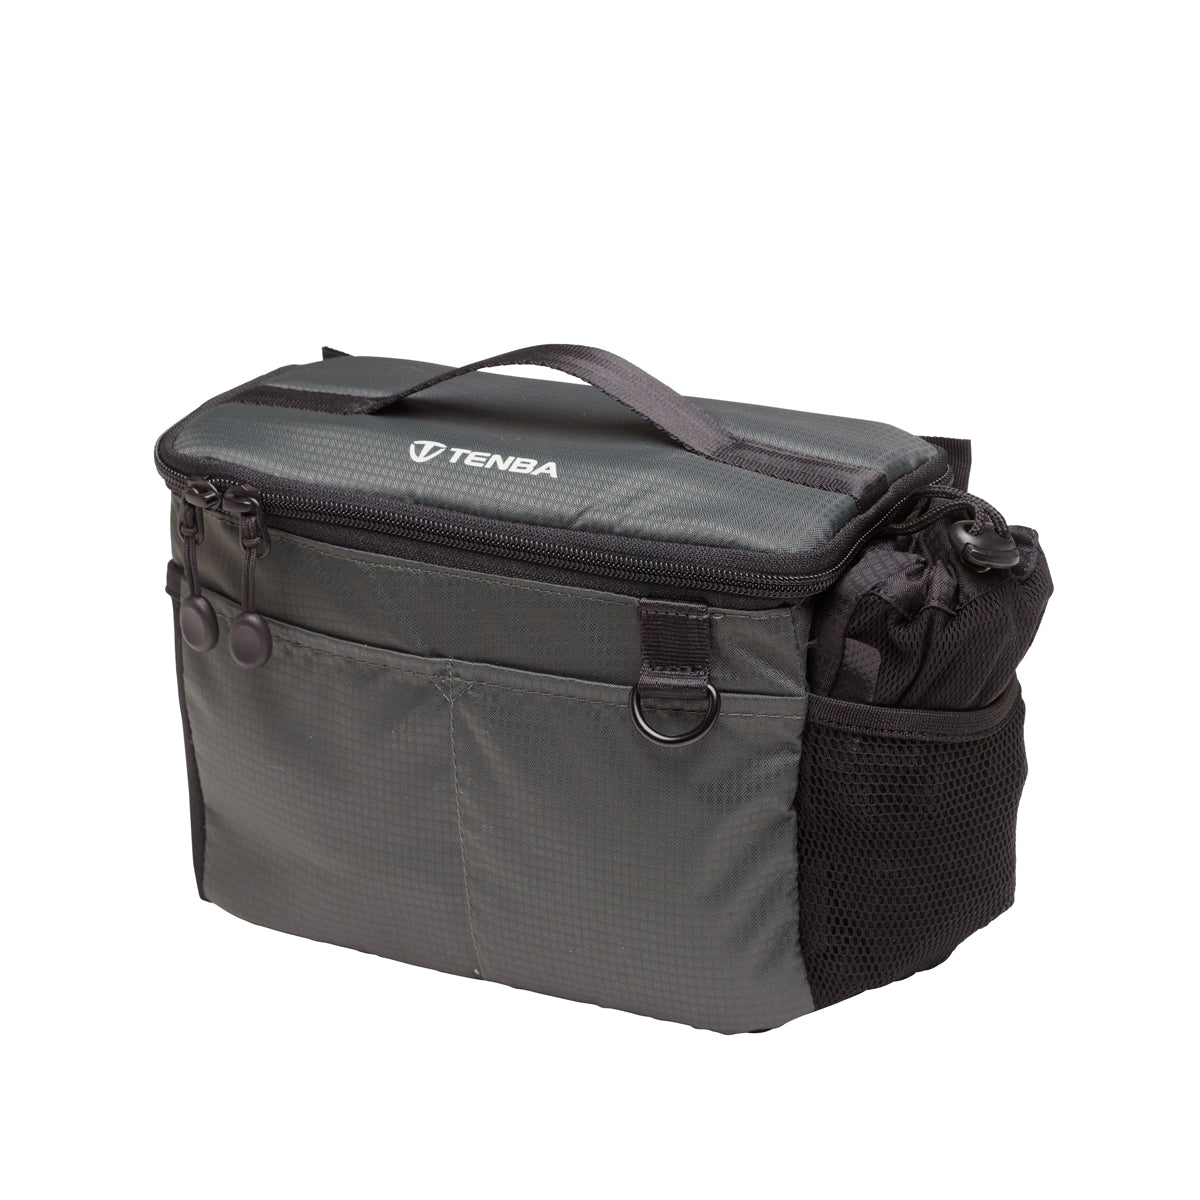 Tenba BYOB/Packlite 9 Flatpack Bundle Bag (Black and Gray)